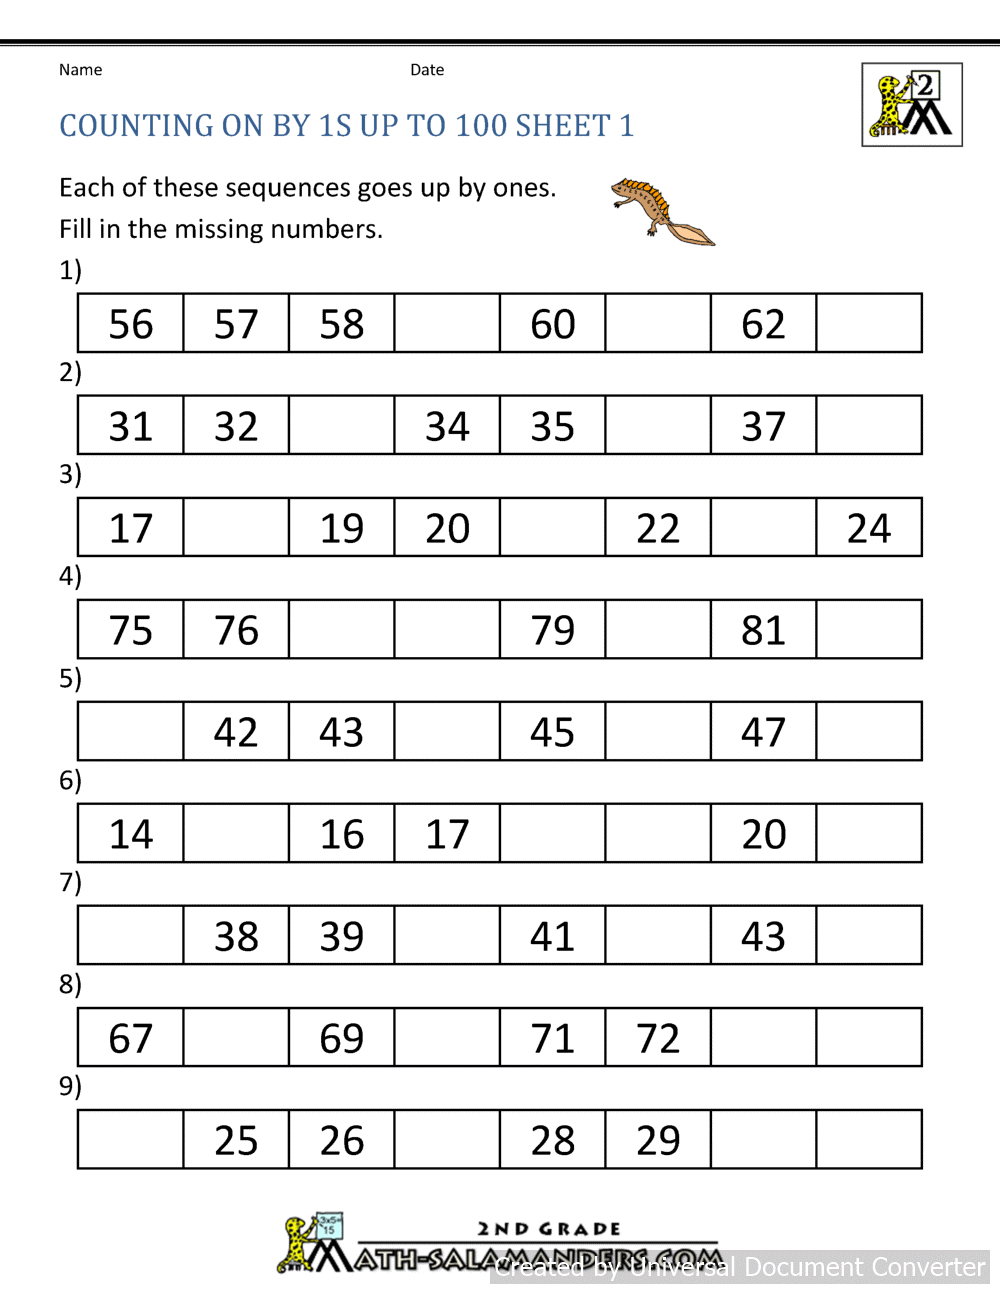 Math salamanders